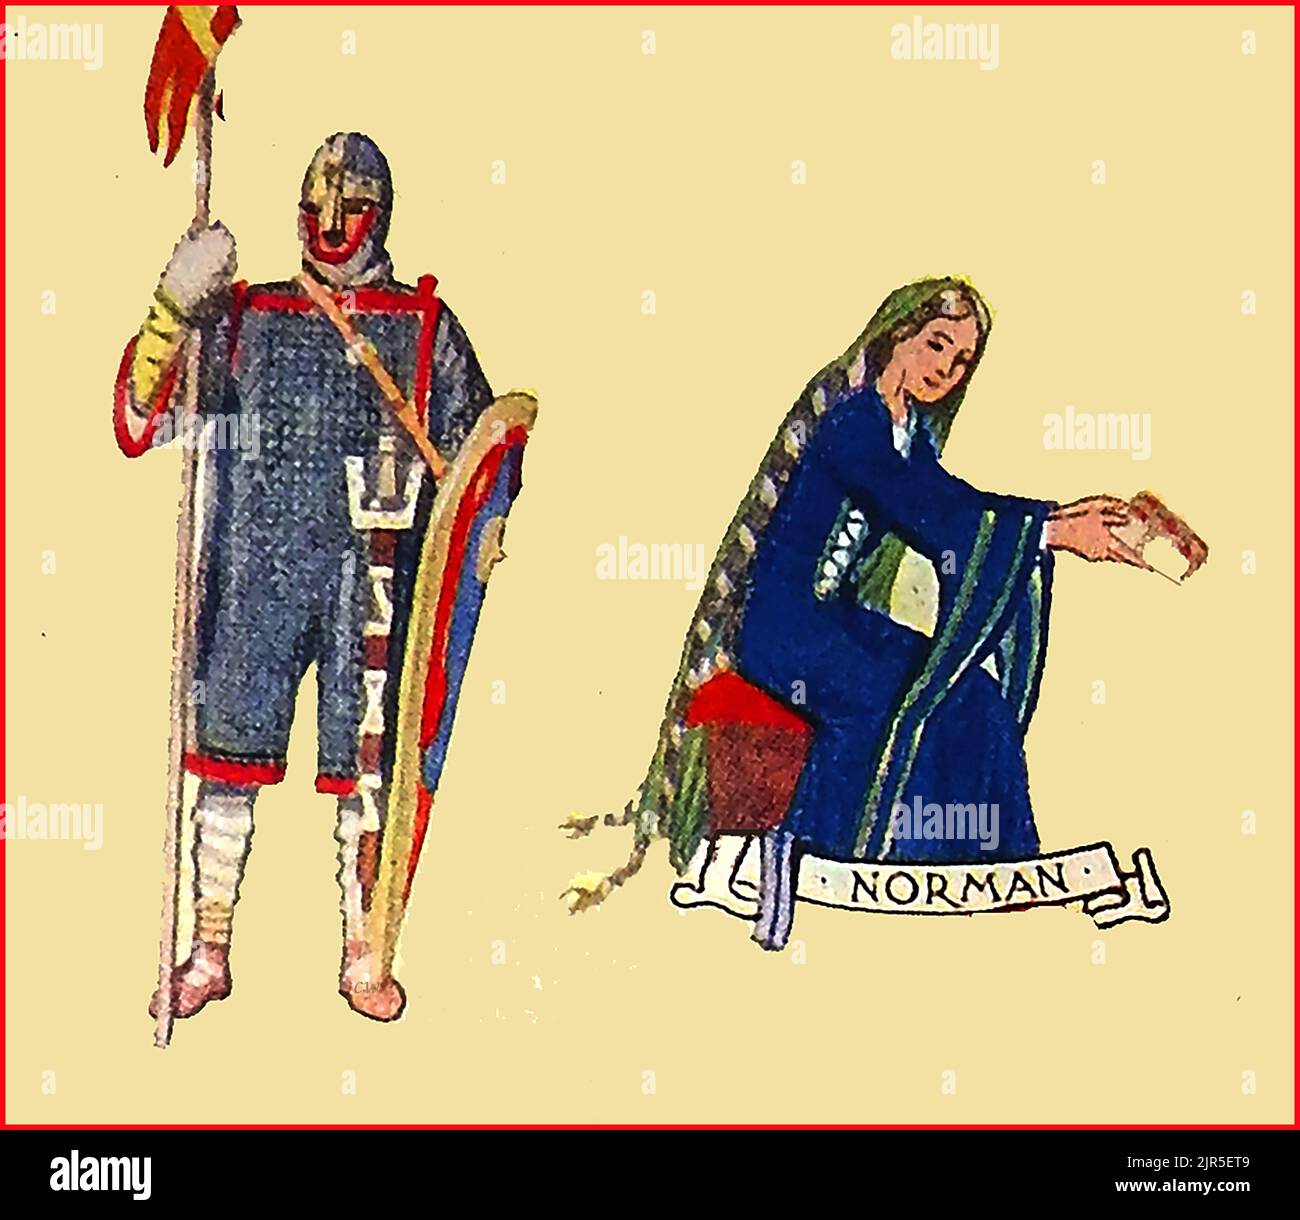 MODE EN GRANDE-BRETAGNE - une image de couleur ancienne montrant des vêtements typiques à l'époque normande. Banque D'Images